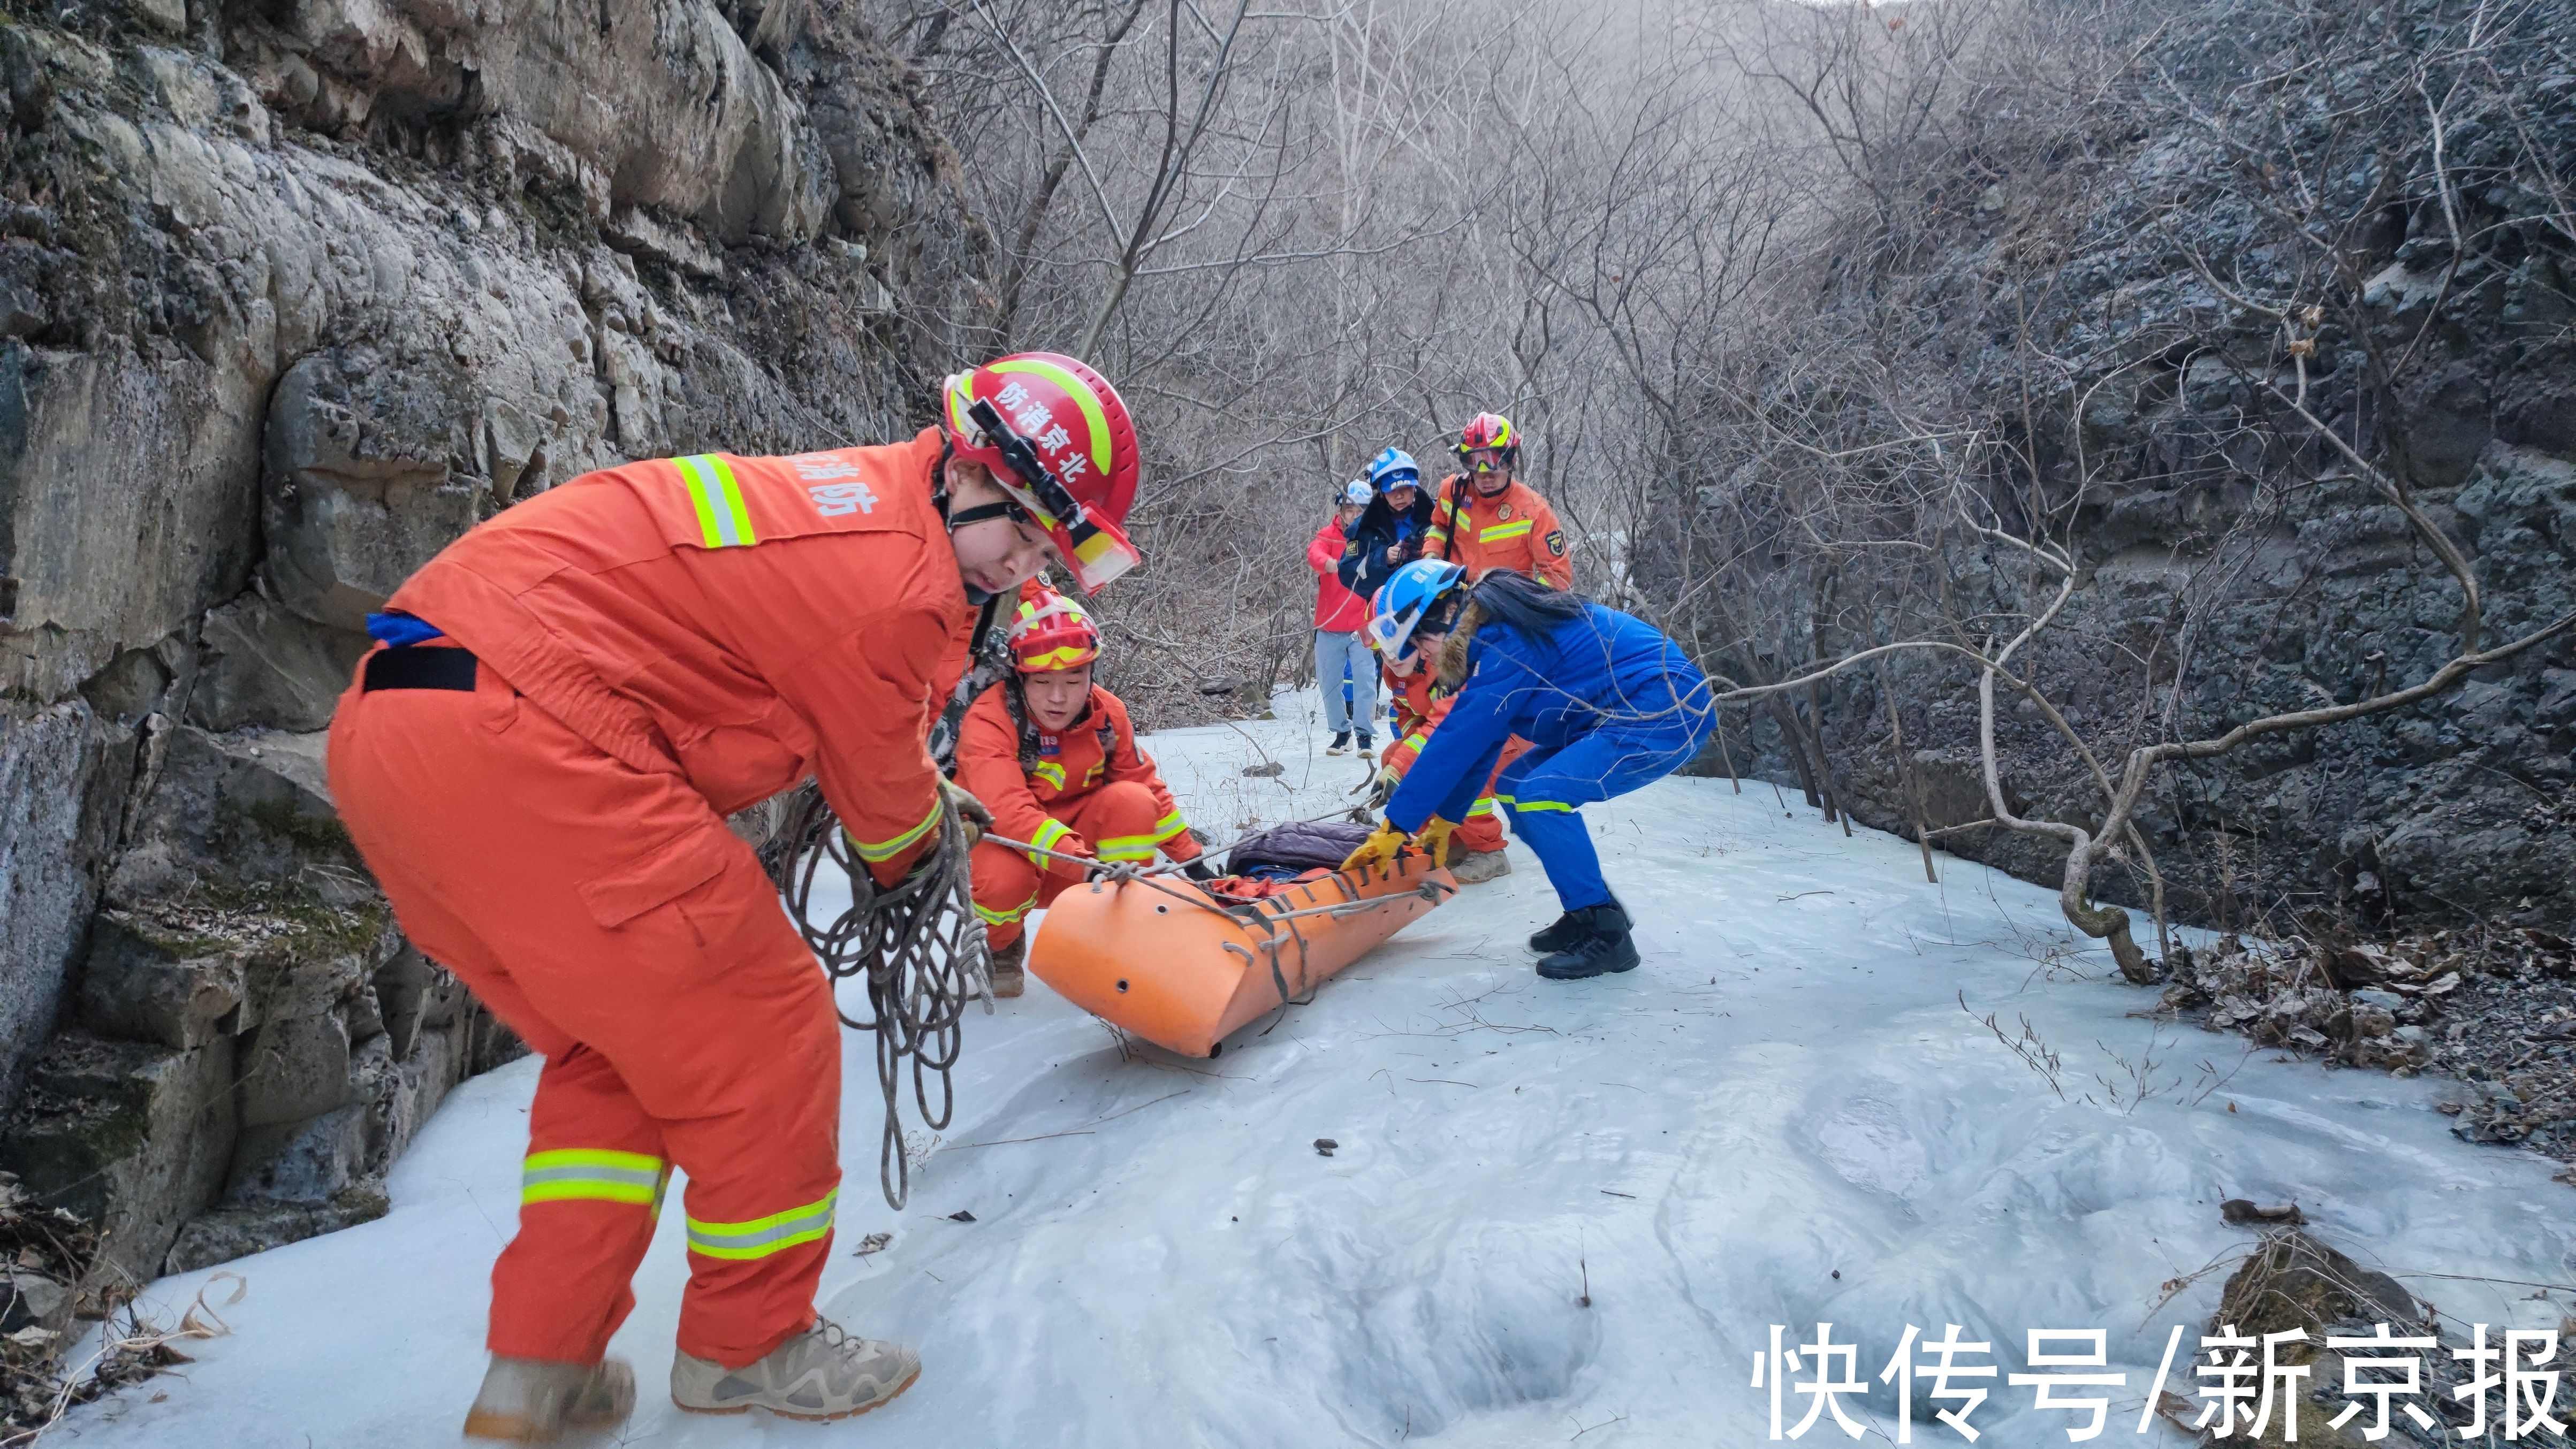 供图|北京一地质教授上山考察时崴脚被困，消防员抬担架将其转运下山